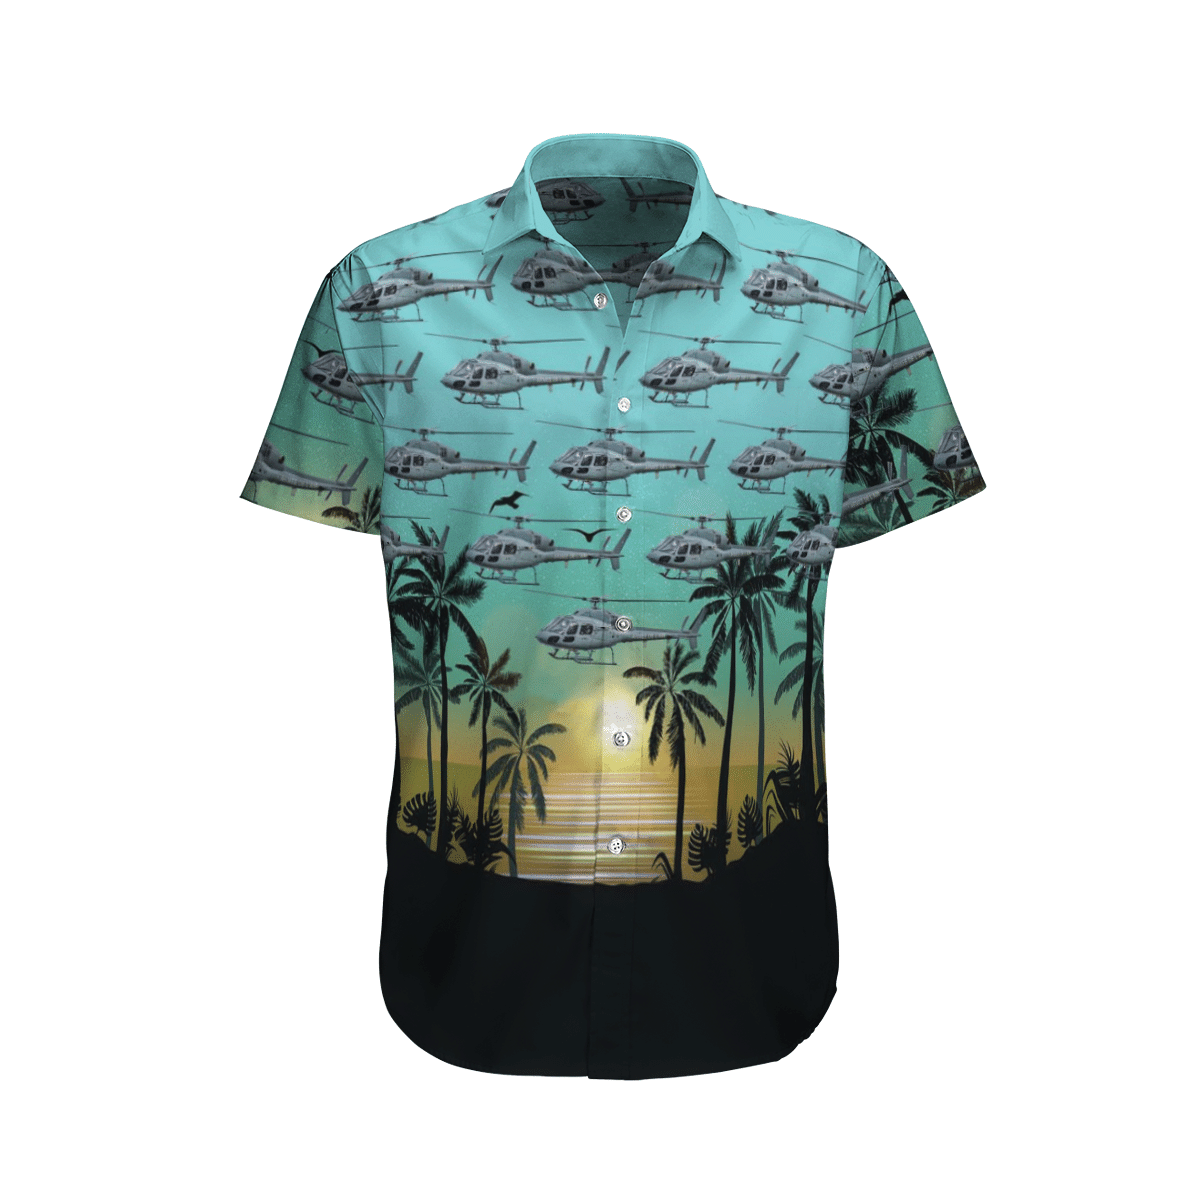 Beautiful Hawaiian shirts for you 8